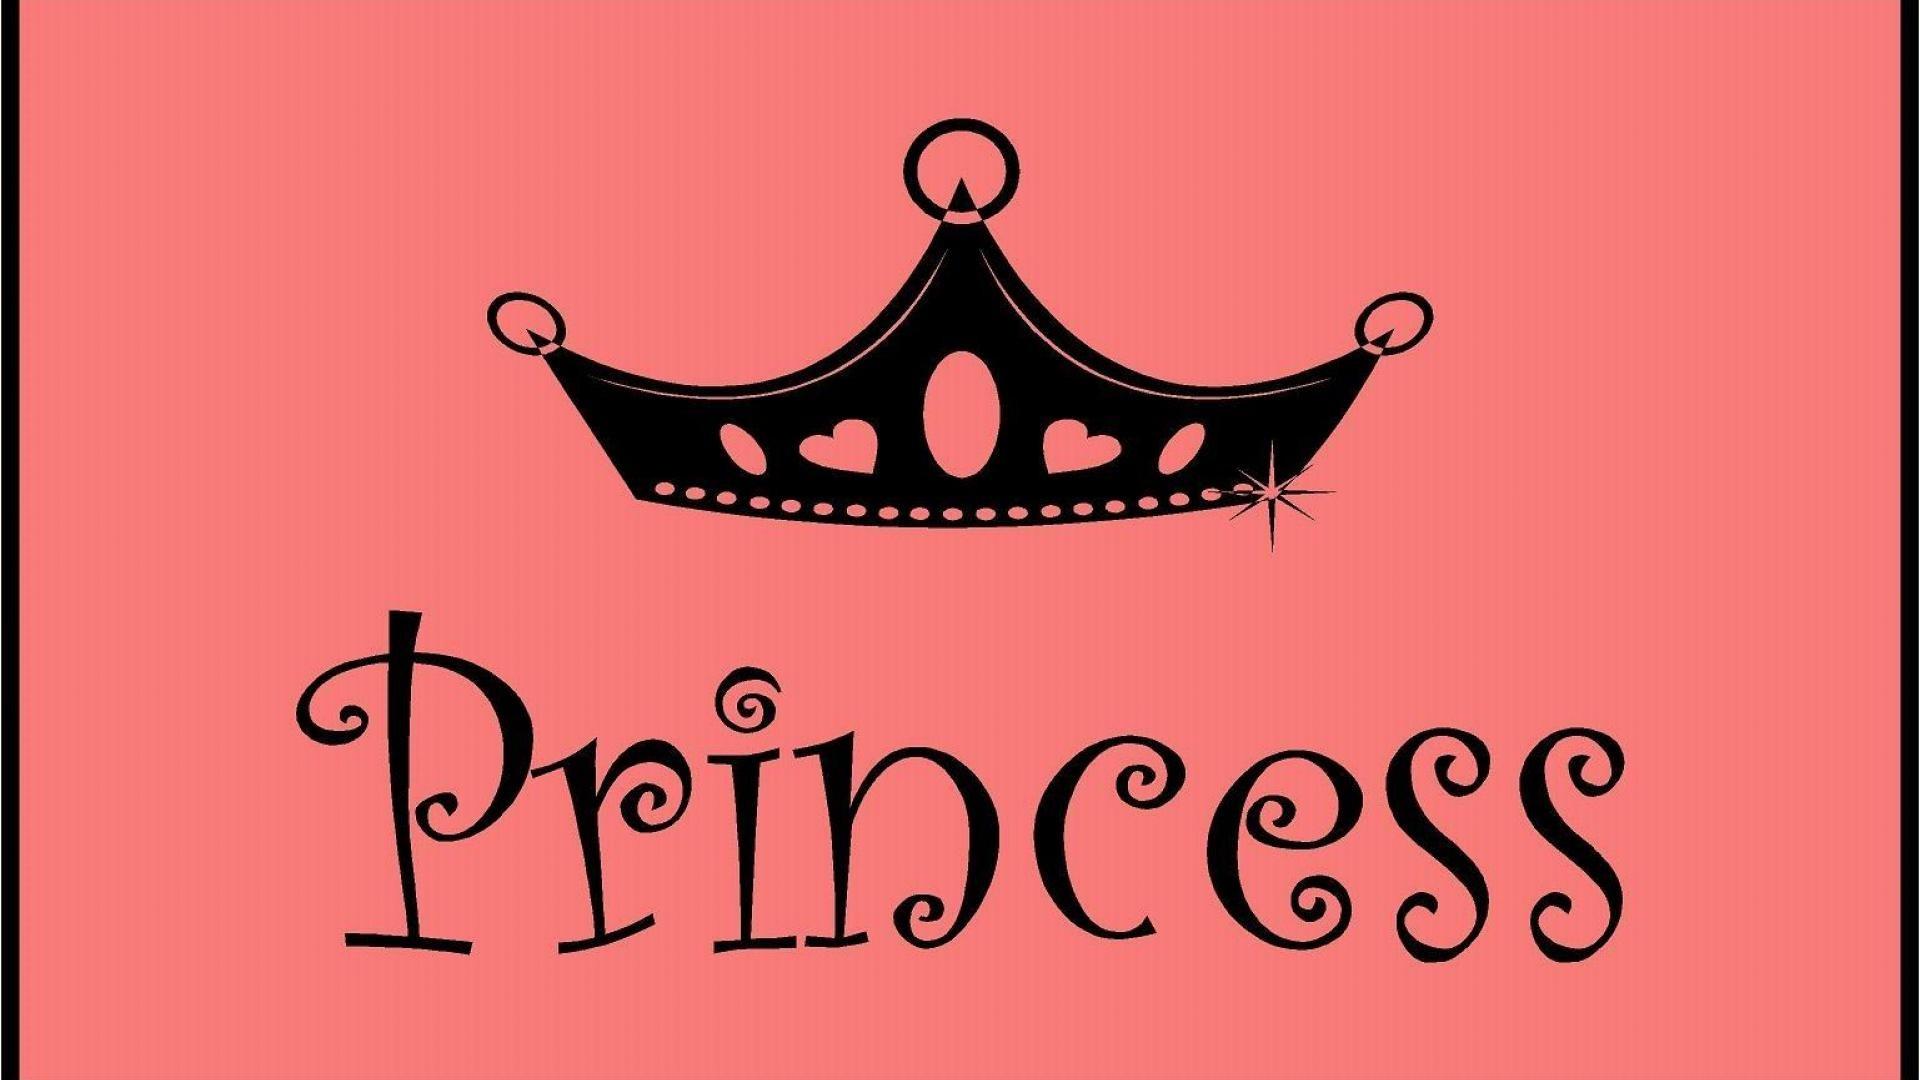 Princess Crown Wallpaper